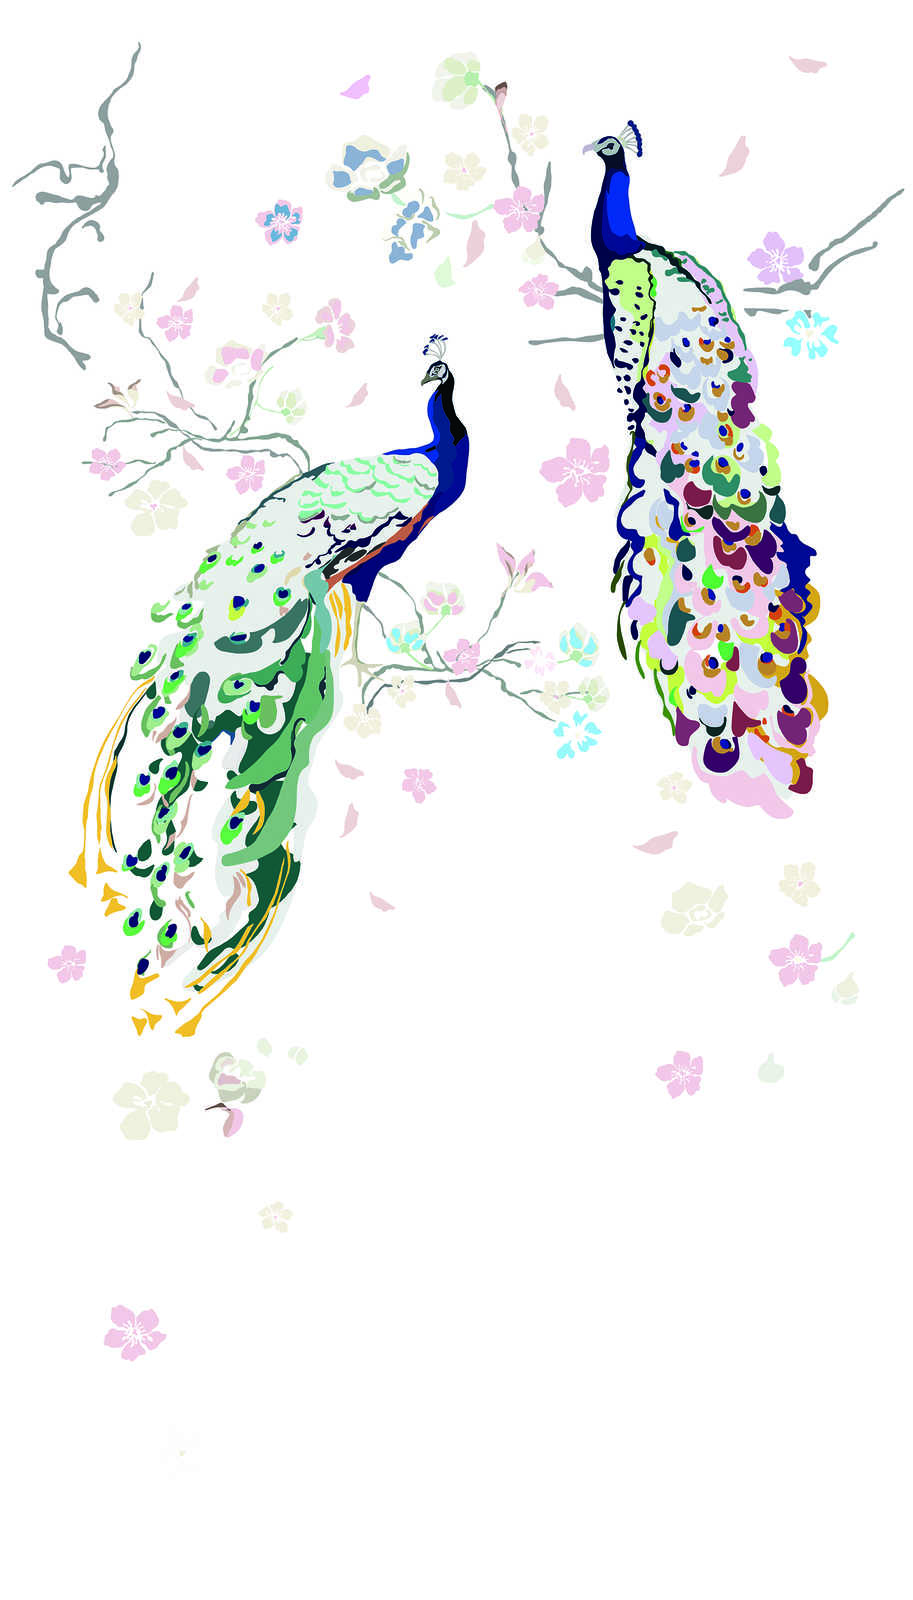             Papier peint intissé avec paon et fleurs - blanc, multicolore, bleu, vert, rose
        